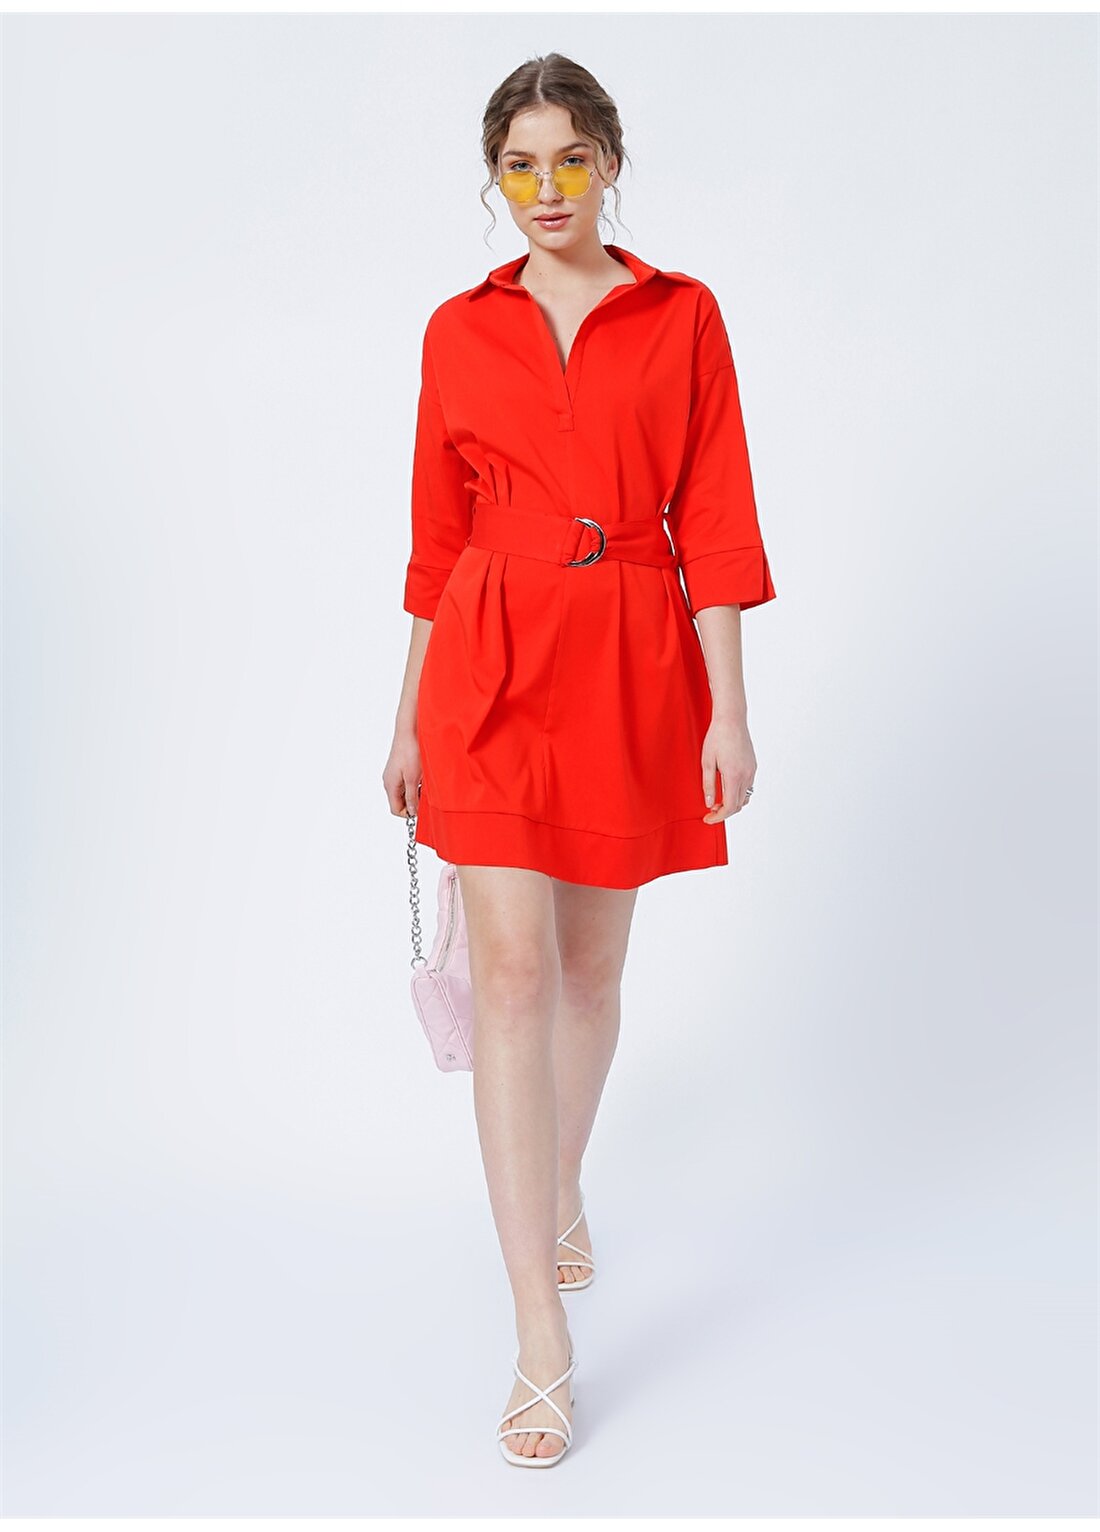 Fabrika Divine Gömlek Yaka Basic Düz Kırmızı Kadın Diz Üstü Elbise